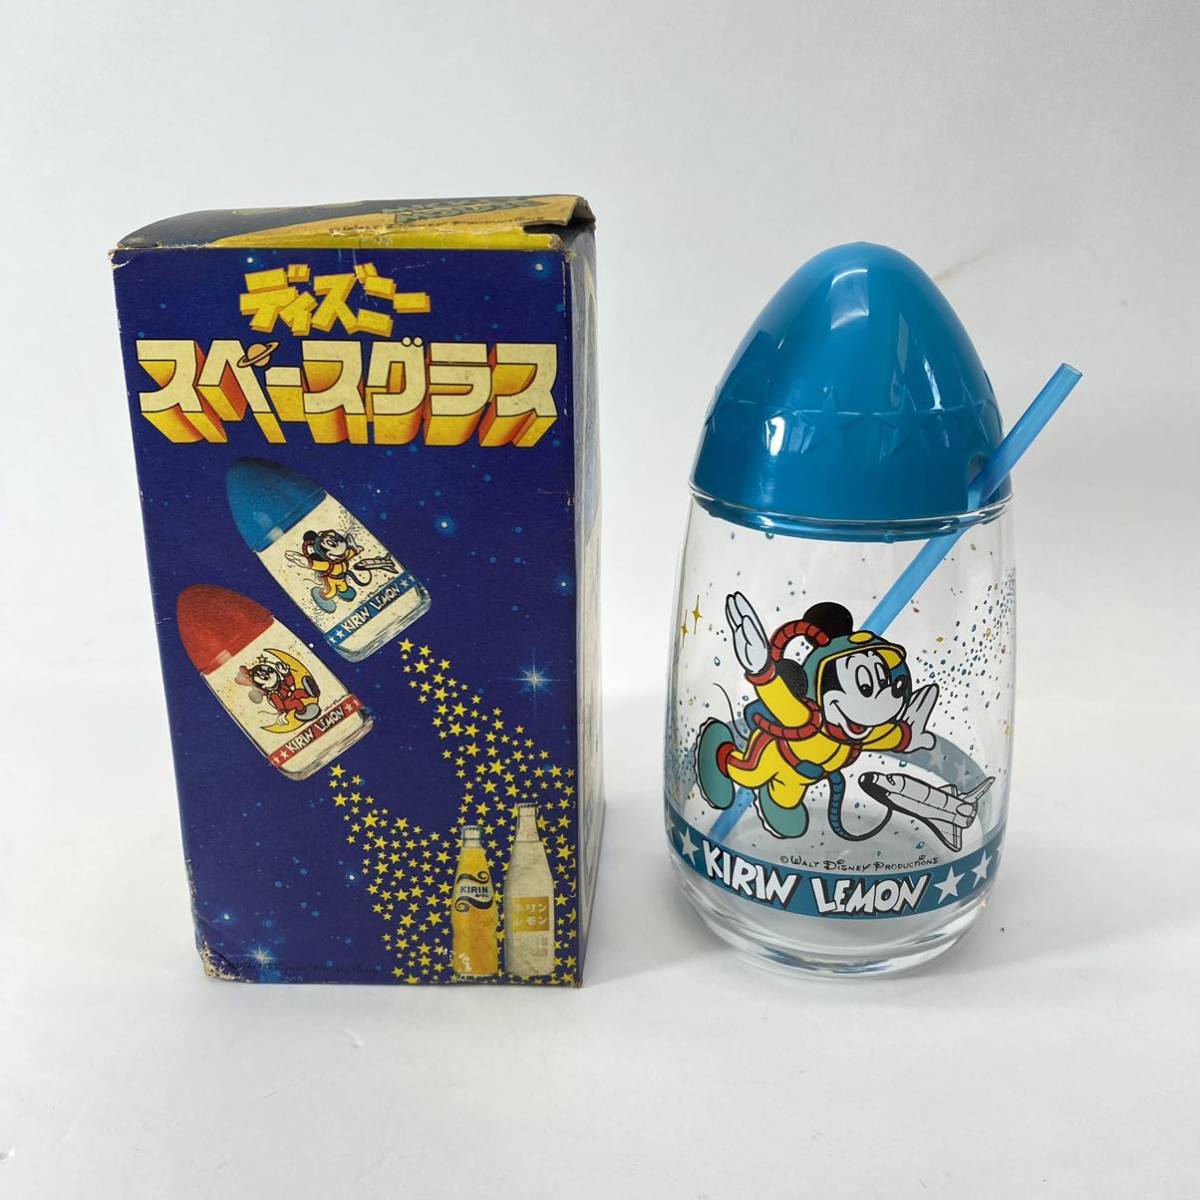 KIRIN LEMON жираф лимон Disney Space стакан Mickey Novelty соломинка с ящиком Space Age подлинная вещь не использовался текущее состояние товар 0305